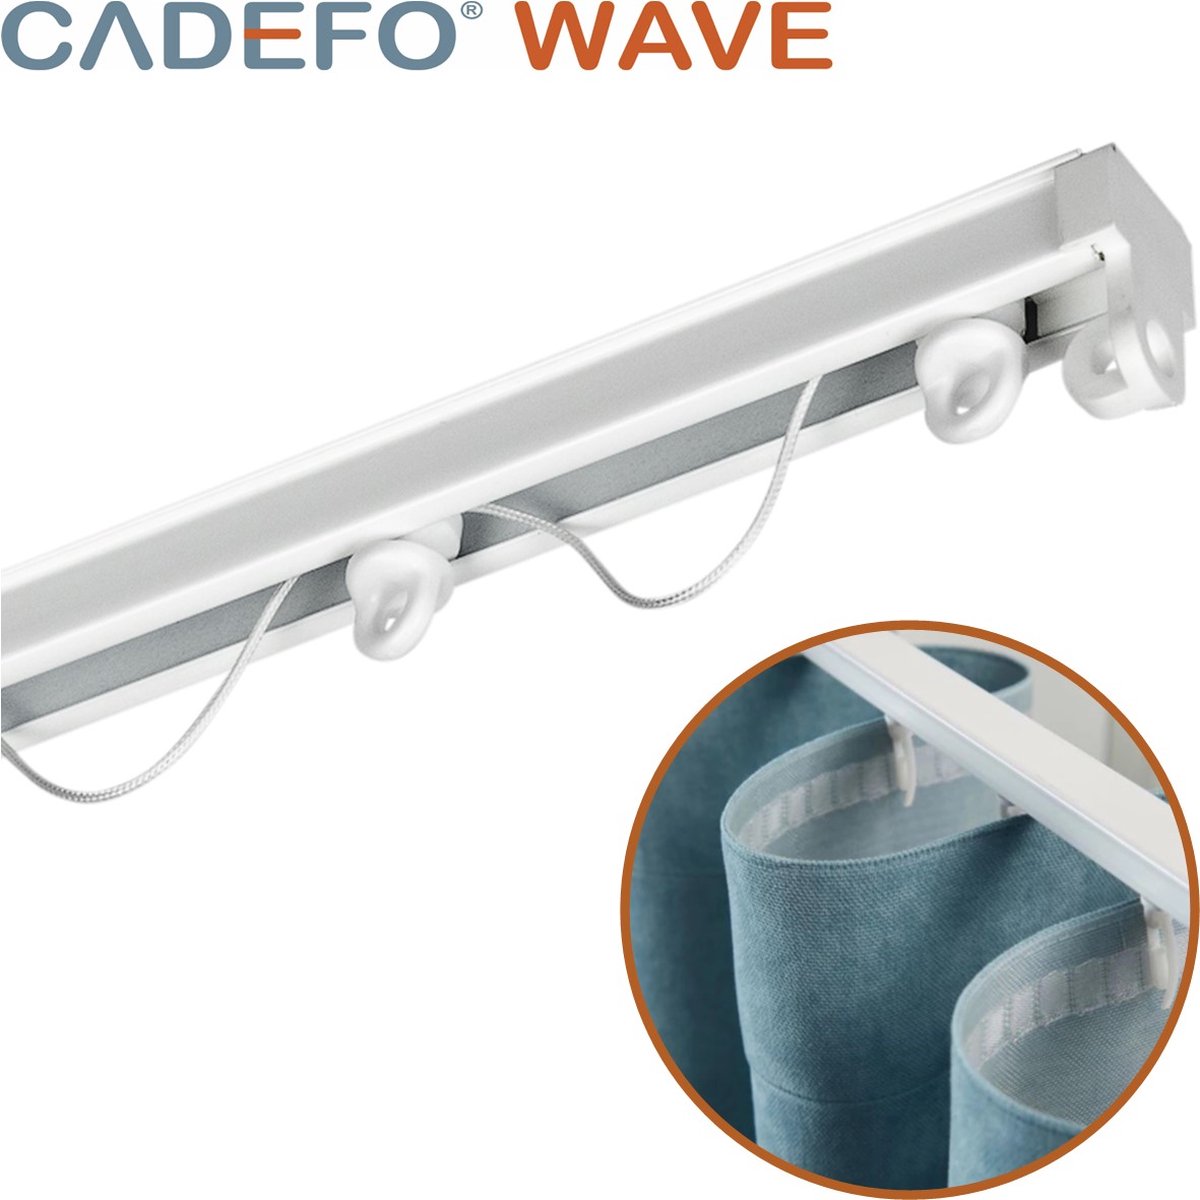 CADEFO WAVE (551 - 600 cm) Gordijnrails - Compleet op maat! - UIT 1 STUK - Leverbaar tot 6 meter - Plafondbevestiging - Lengte 557 cm